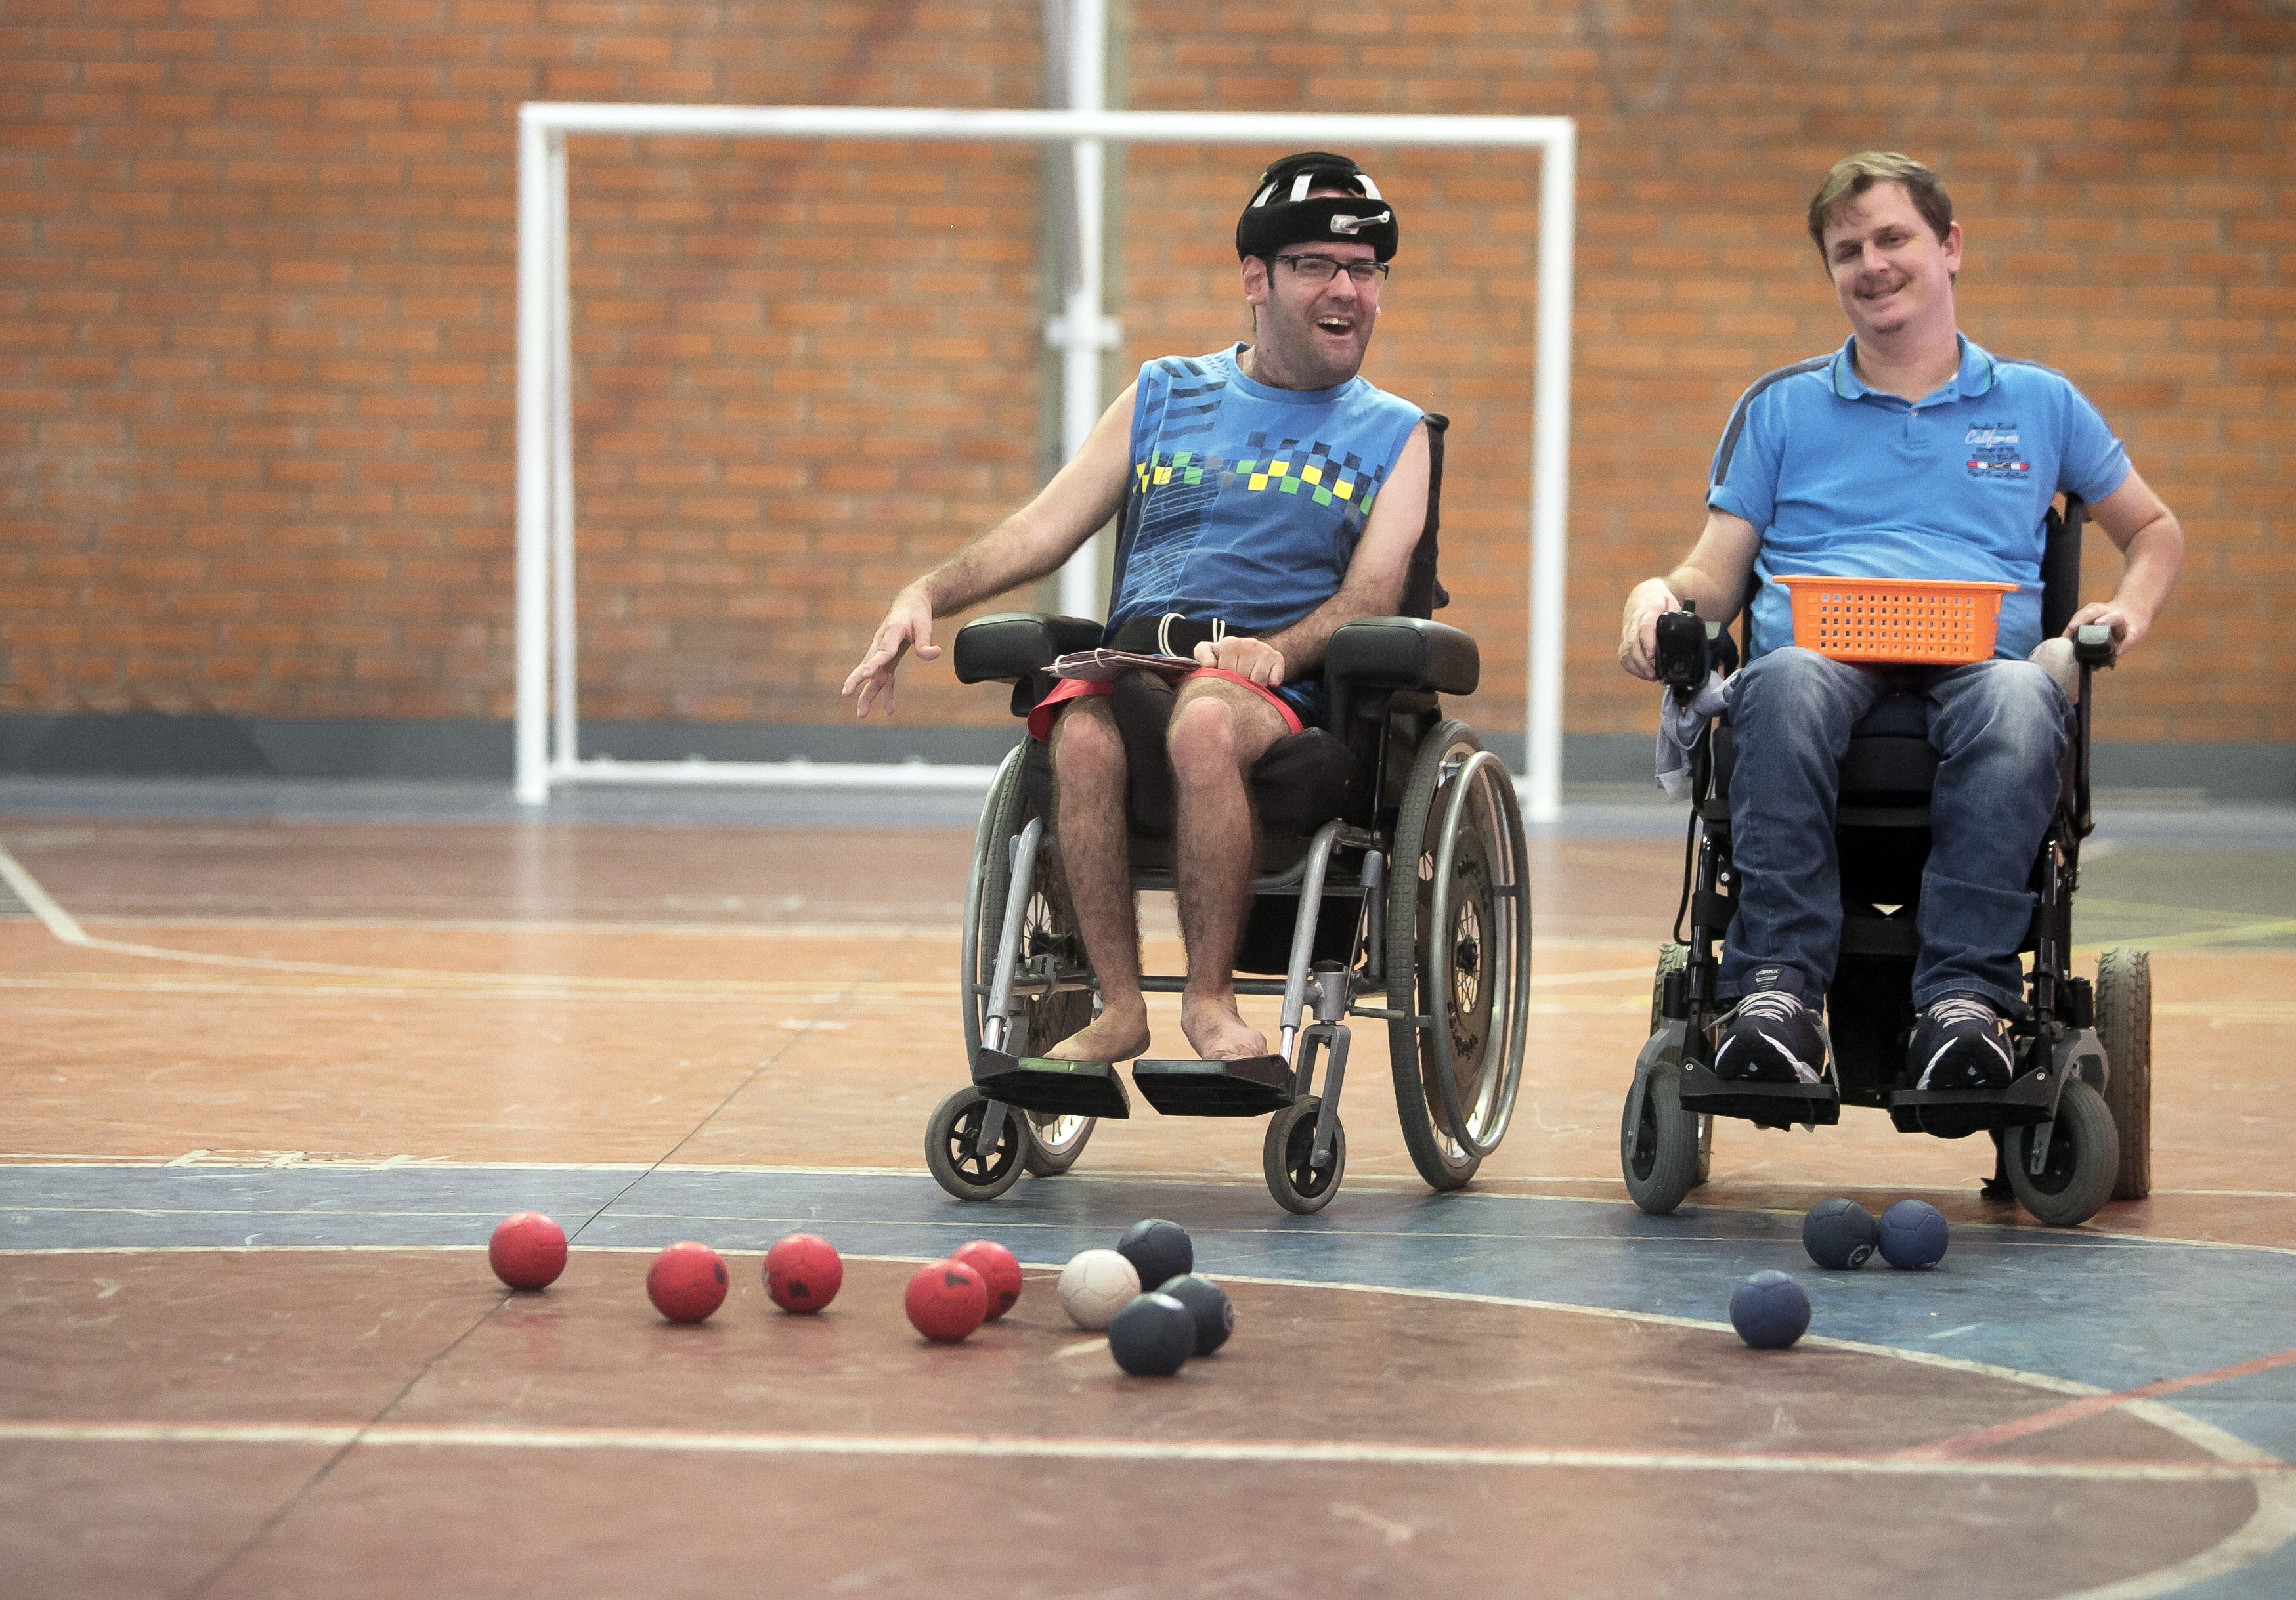 Ambiente interno, ginásio, dois meninos em cadeiras de rodas, algumas bolas no chão.